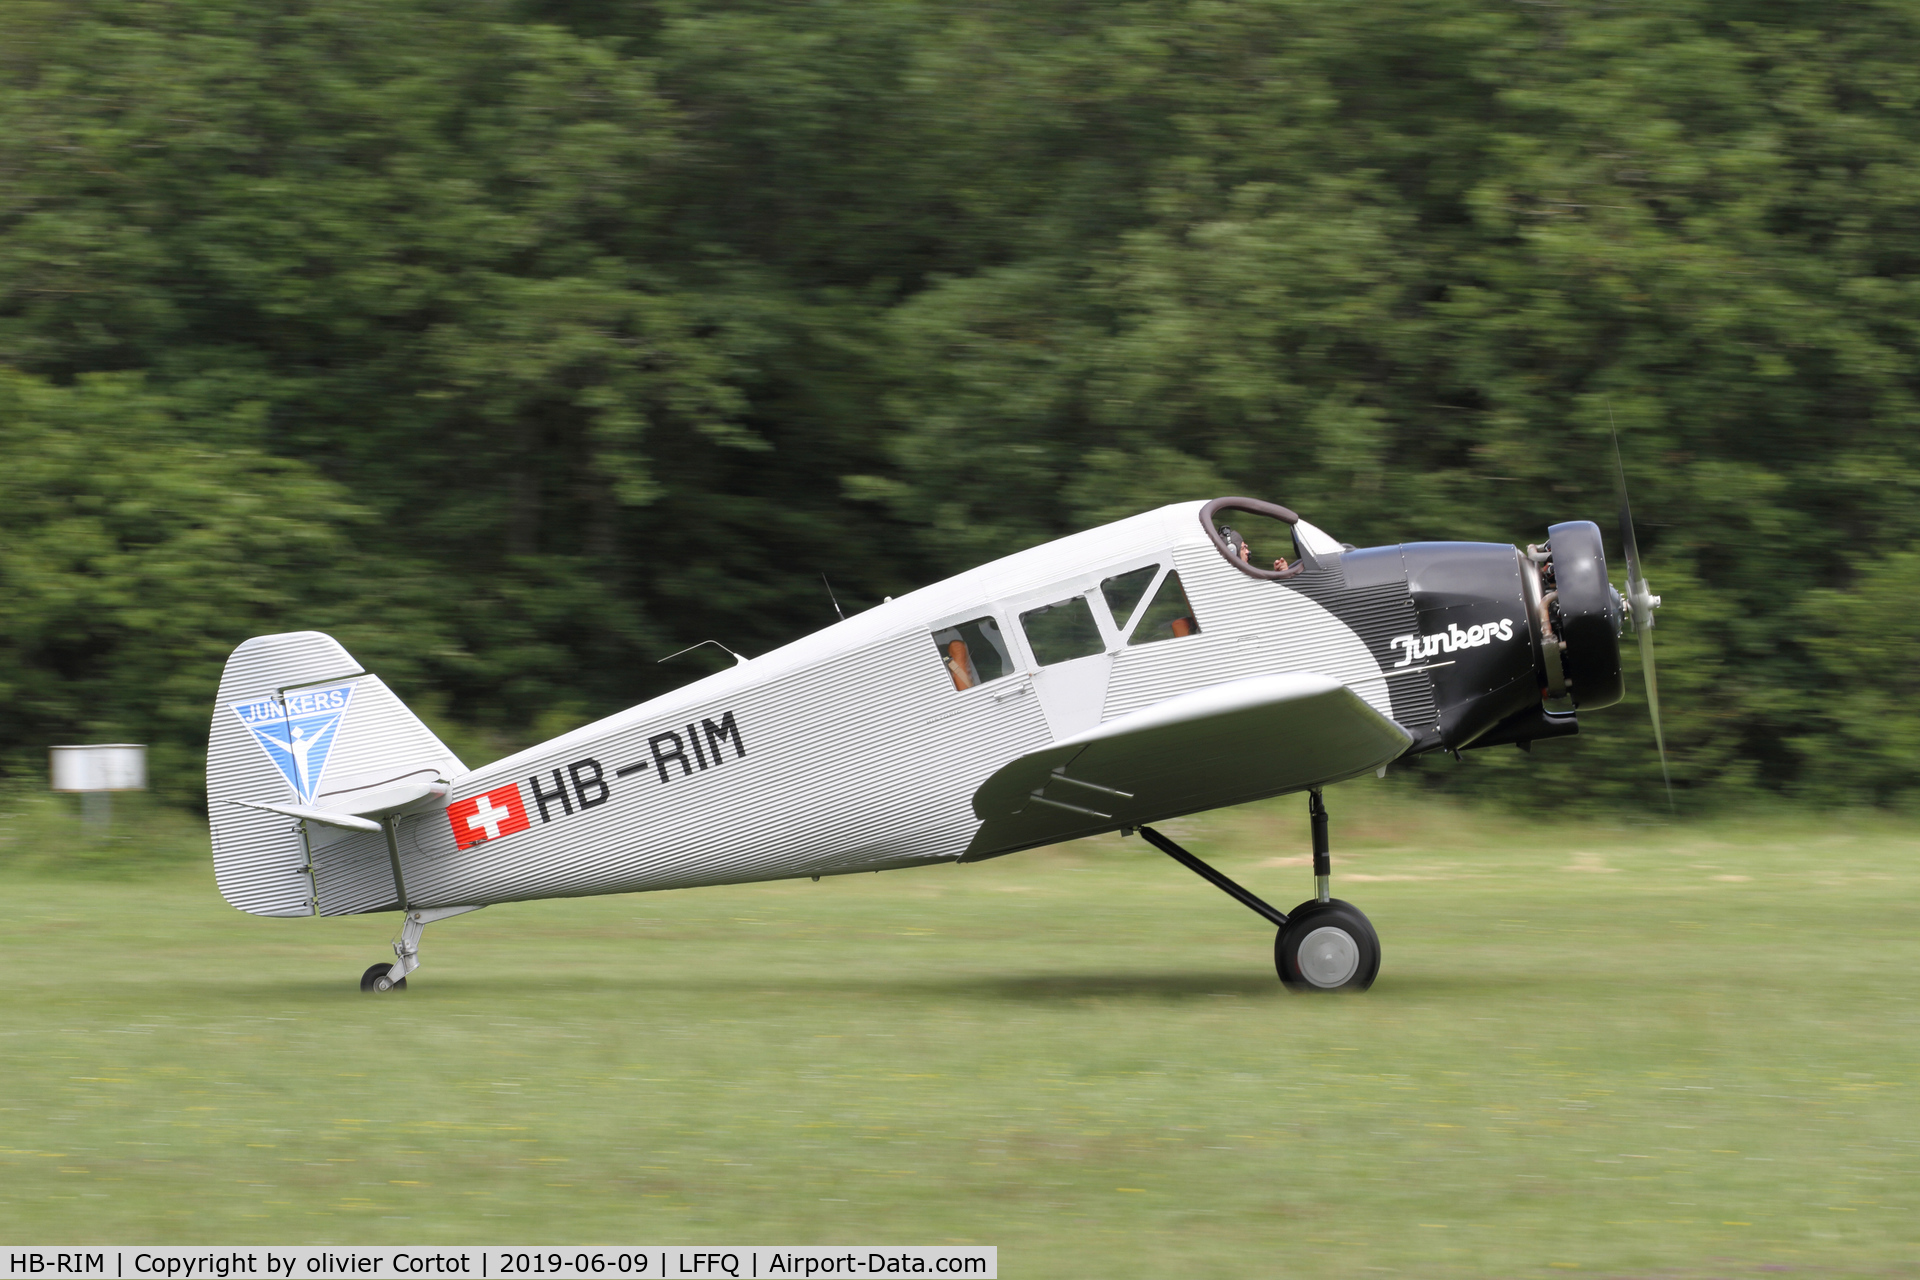 HB-RIM, 2015 Junkers F-13 (Replica) C/N 13-001, 2019 airshow